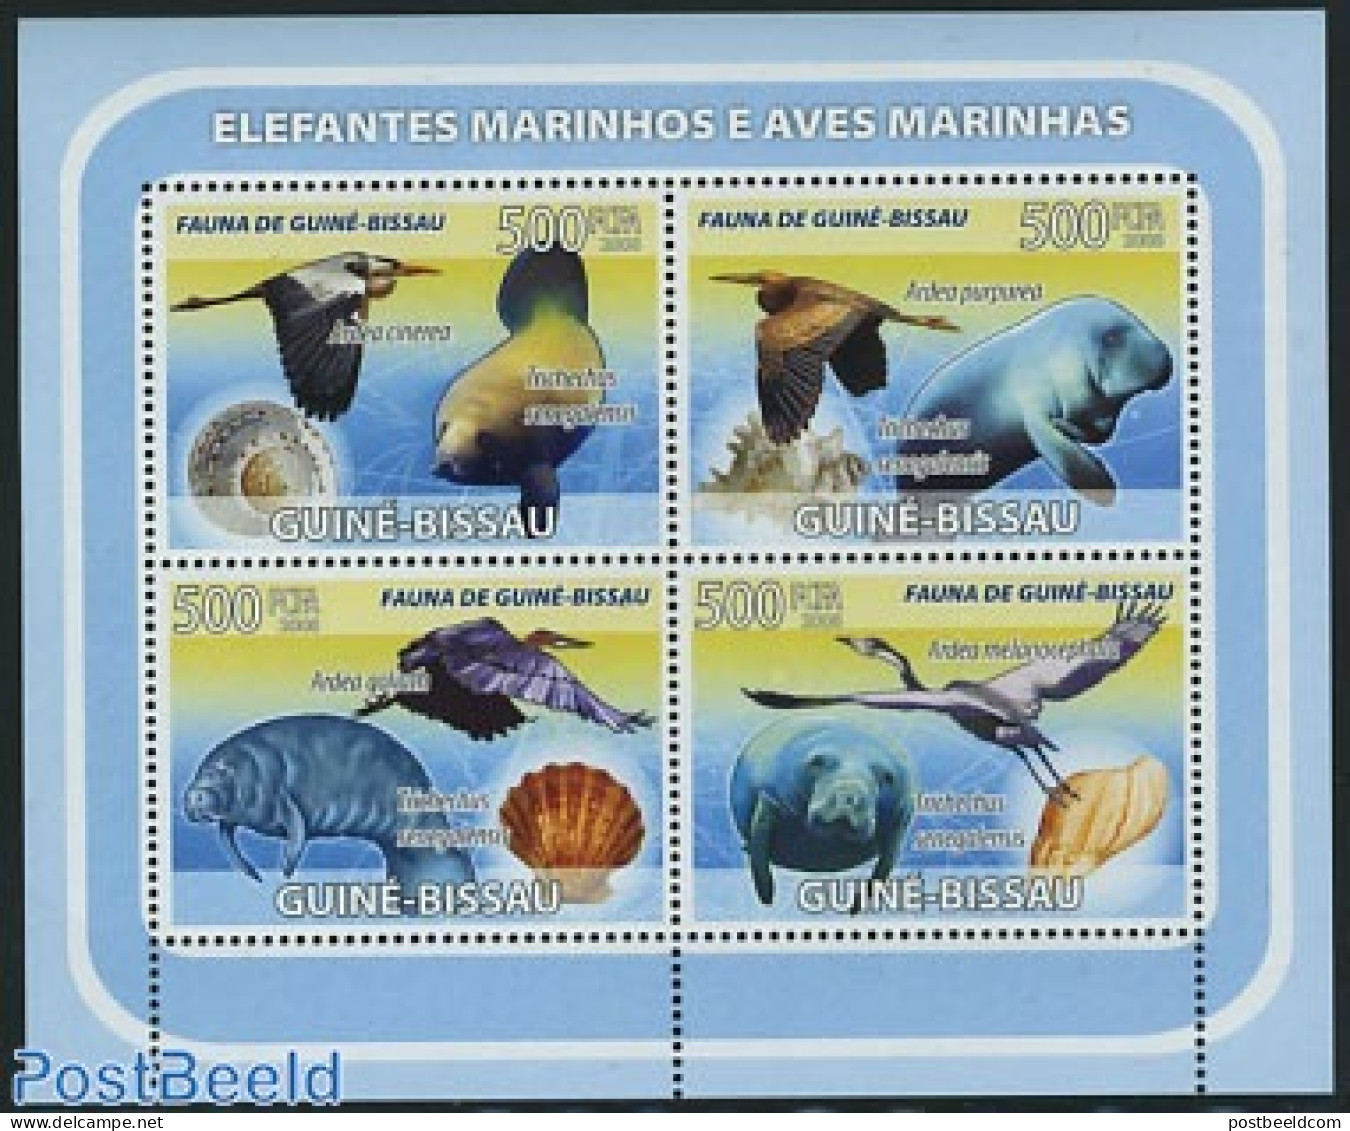 Guinea Bissau 2008 Birds, Shells, Sea Mammals 4v M/s, Mint NH, Nature - Birds - Sea Mammals - Shells & Crustaceans - Marine Life